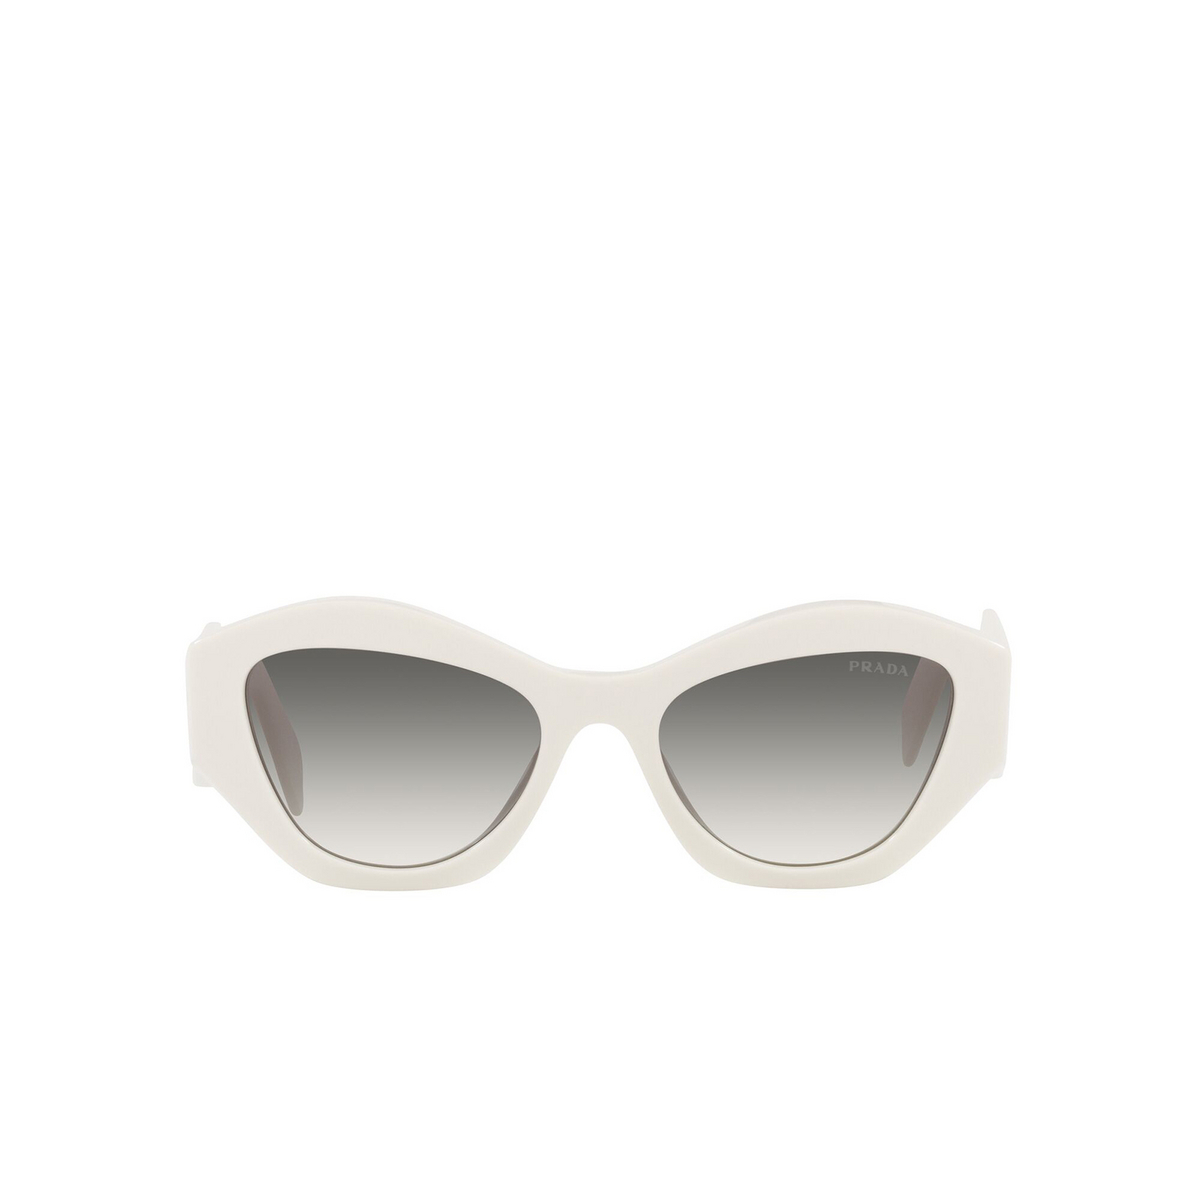 Prada® Irregular Sunglasses: PR 07YS color White 142130 - front view.